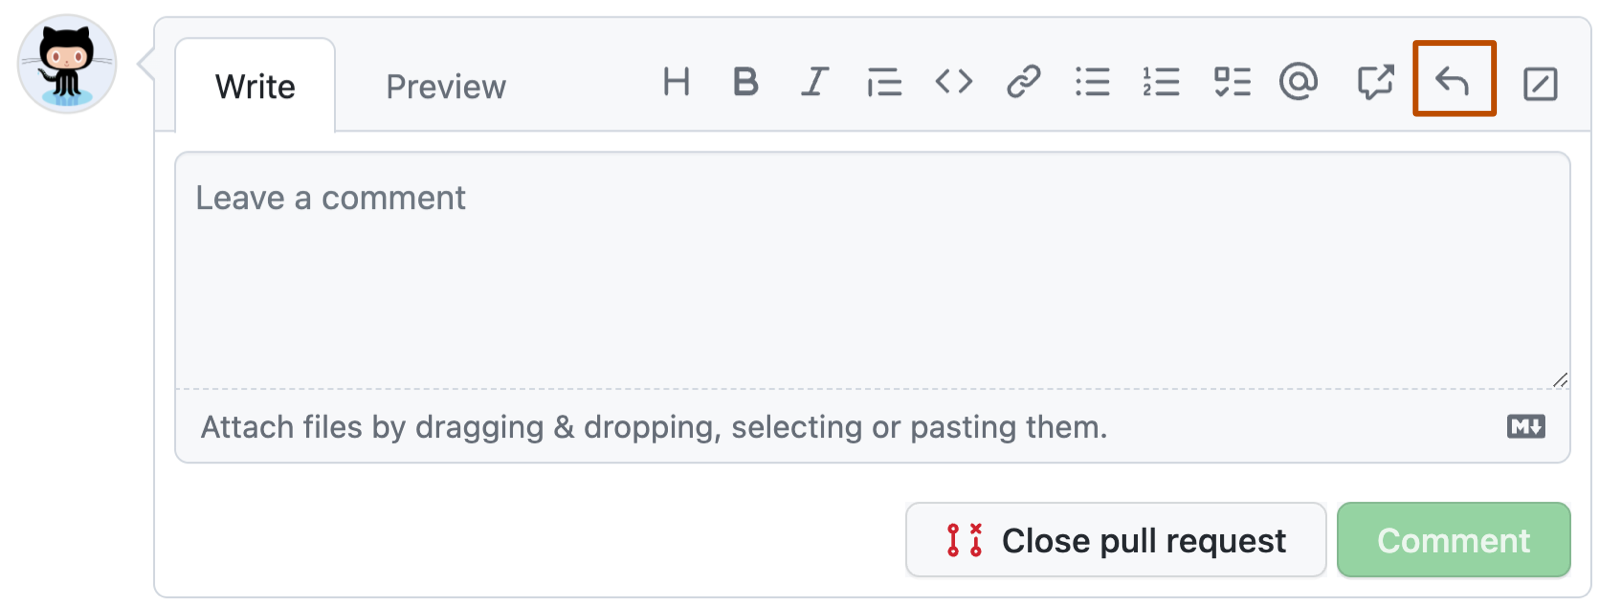 Captura de tela de uma caixa de comentário do GitHub. Na barra de ferramentas, há um botão de resposta com uma seta curva para a esquerda com o contorno em laranja escuro.